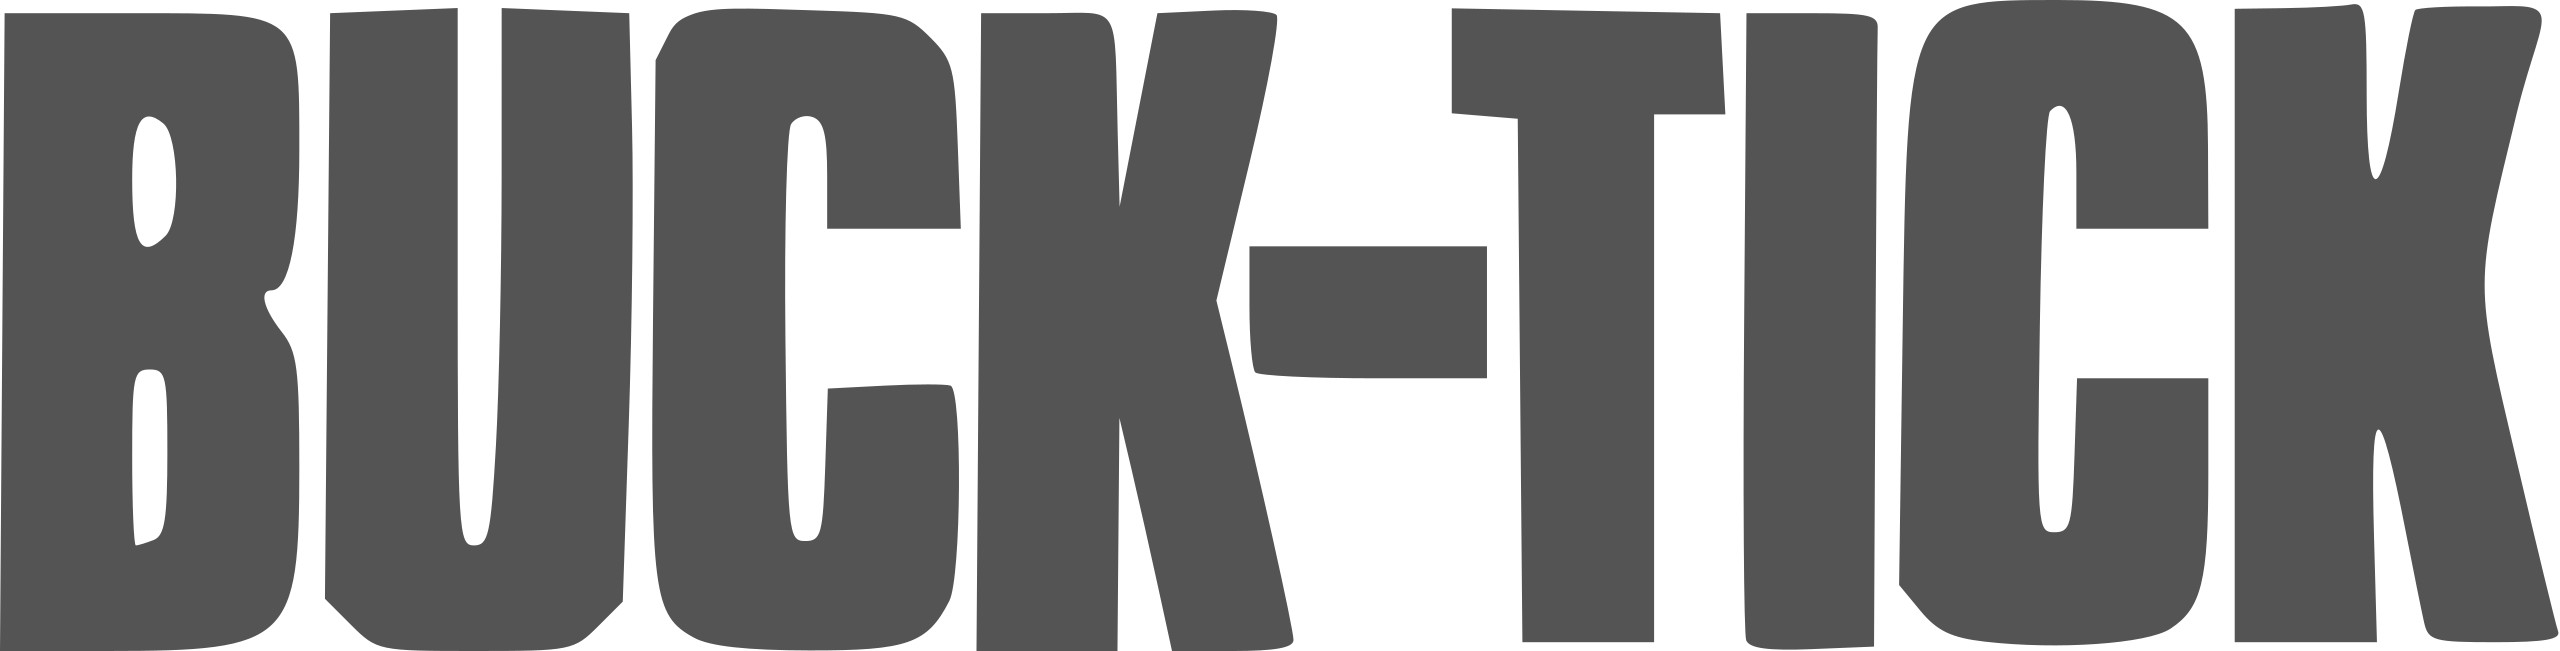 File:Buck-Tick logo.svg - Wikipedia